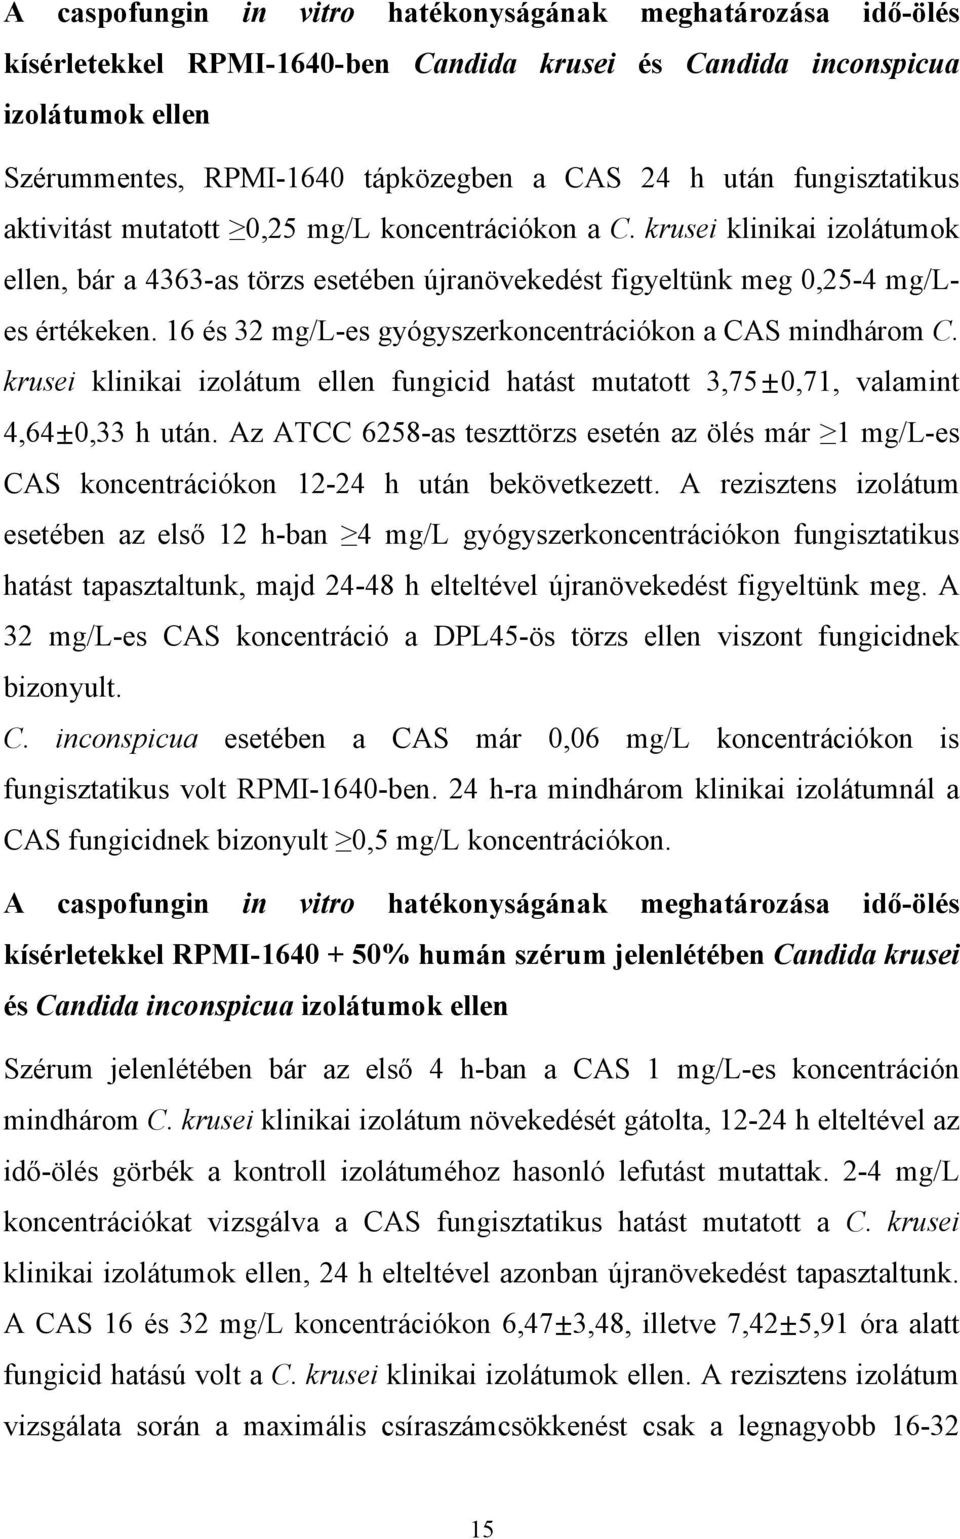 16 és 32 mg/l-es gyógyszerkoncentrációkon a CAS mindhárom C. krusei klinikai izolátum ellen fungicid hatást mutatott 3,75 0,71, valamint 4,64 0,33 h után.